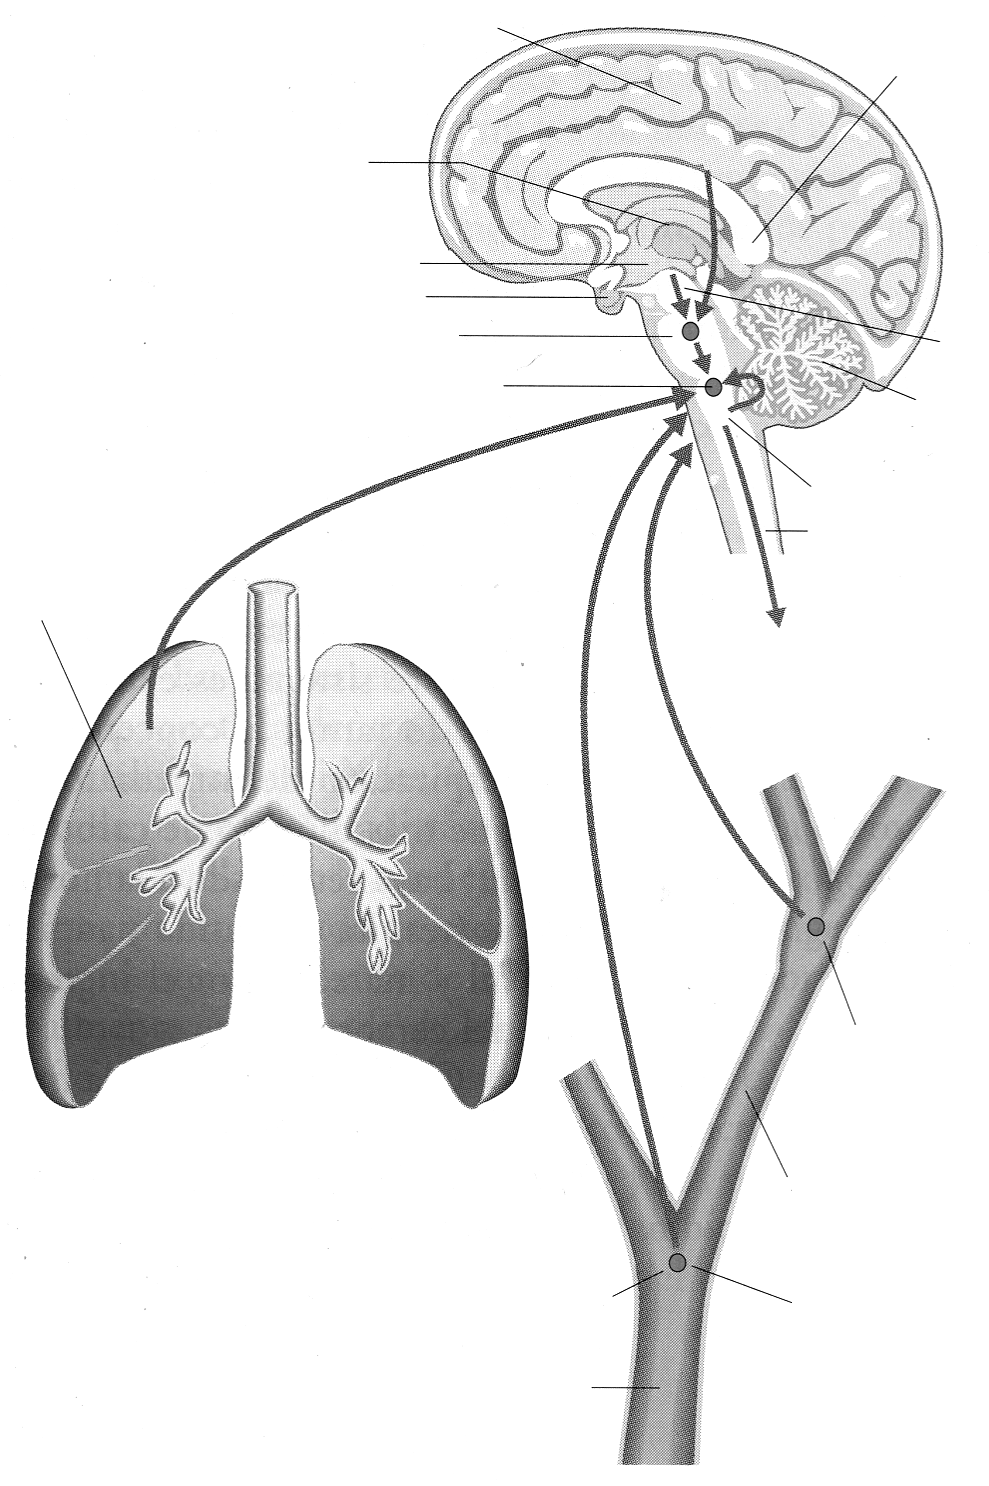 Ciencias Básicas Electivo Biología 2. Ventilación pulmonar La ventilación pulmonar es el proceso mediante el cual se intercambian gases entre la atmósfera y los alvéolos pulmonares.